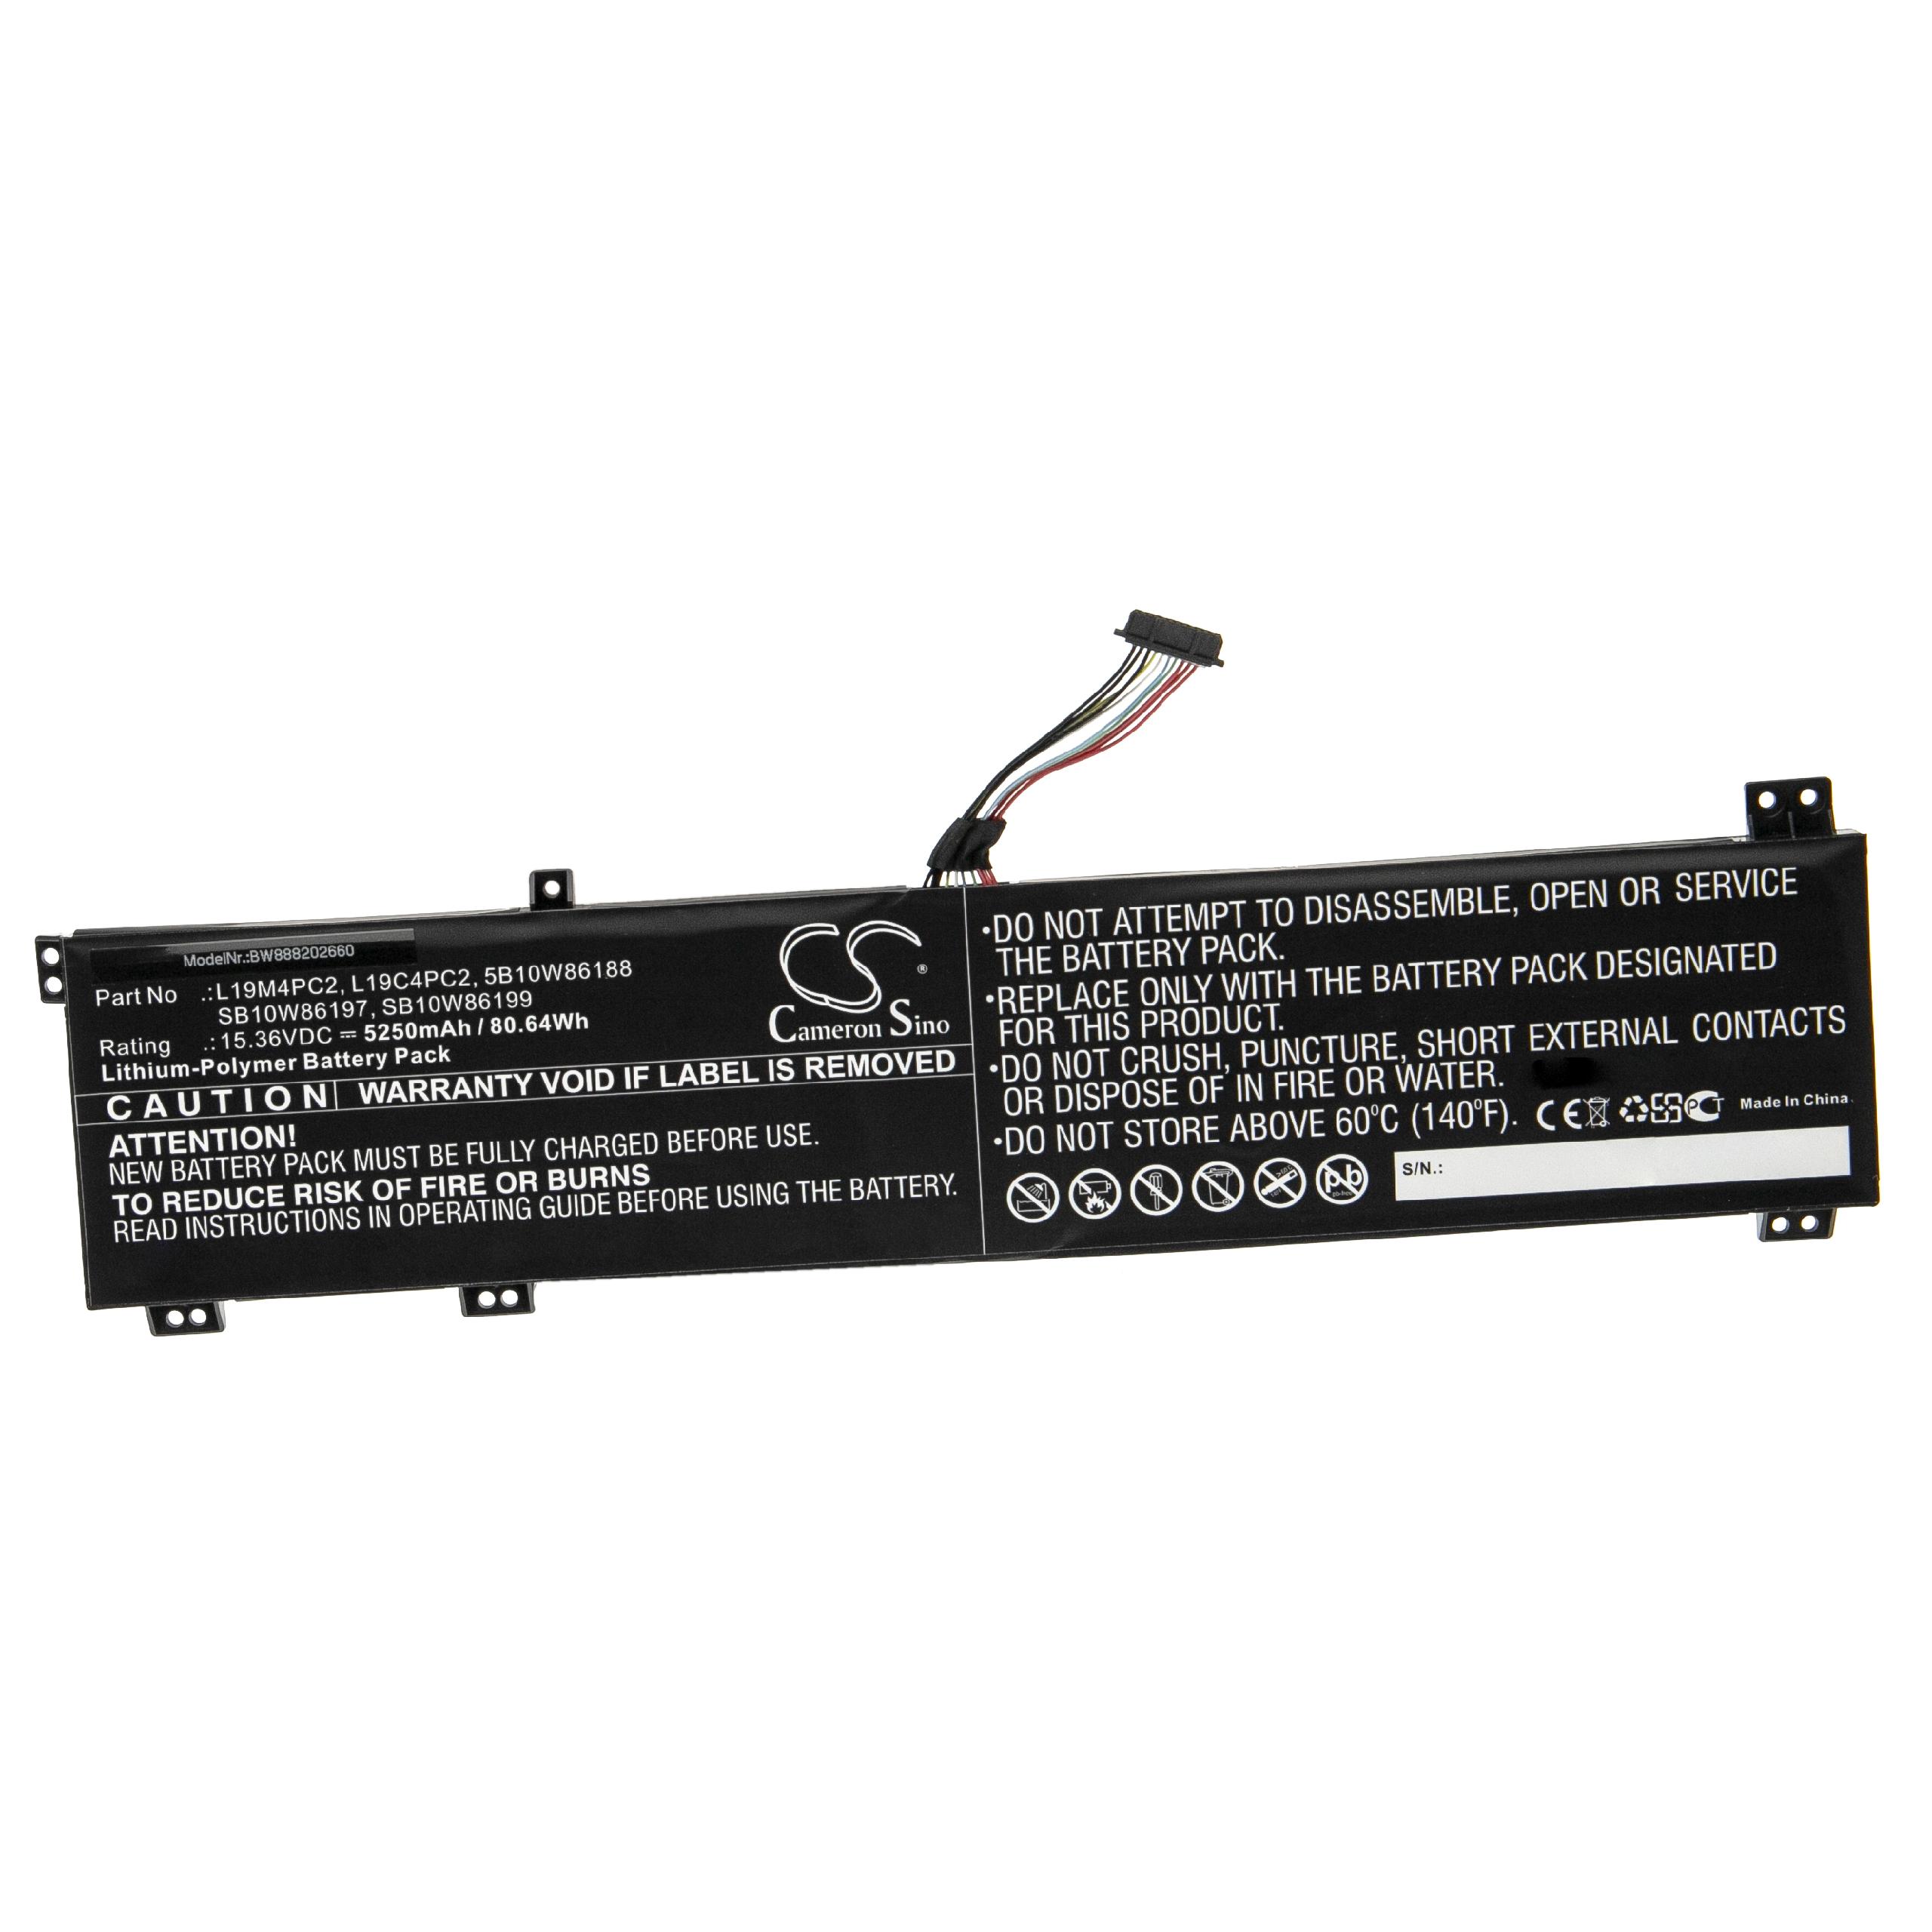 Batterie remplace Lenovo L19C4PC1, 5B10W86188, L19C4PC2 pour ordinateur portable - 5250mAh 15,36V Li-polymère